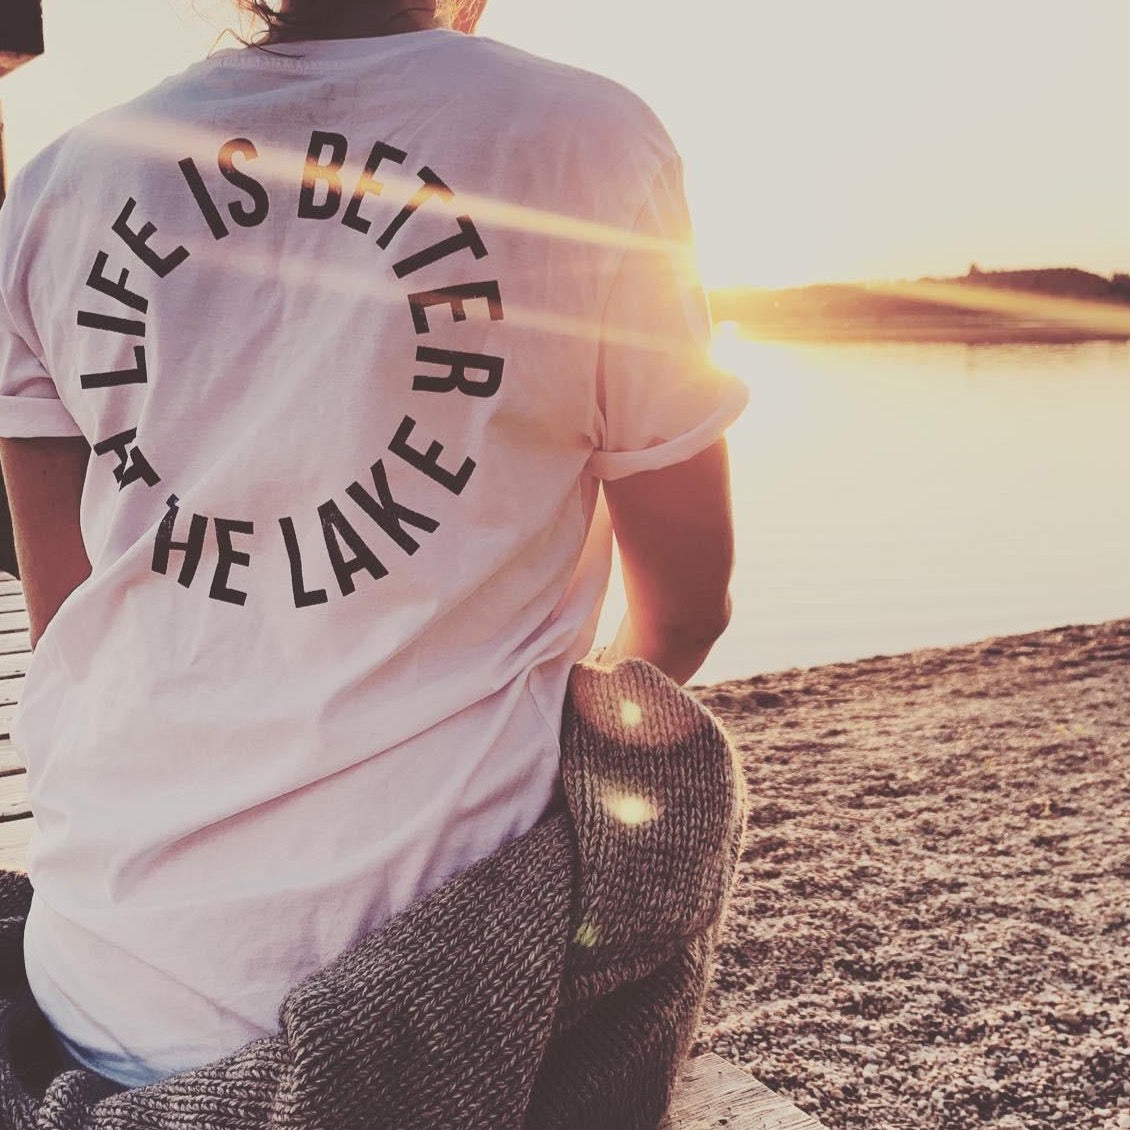 T-Shirt Life is better at the lake mit uraltem Stempeldruckverfahren bedruckt. Bio-Baumwolle, recycling. Exklusiv bei den Three Monkeys 030